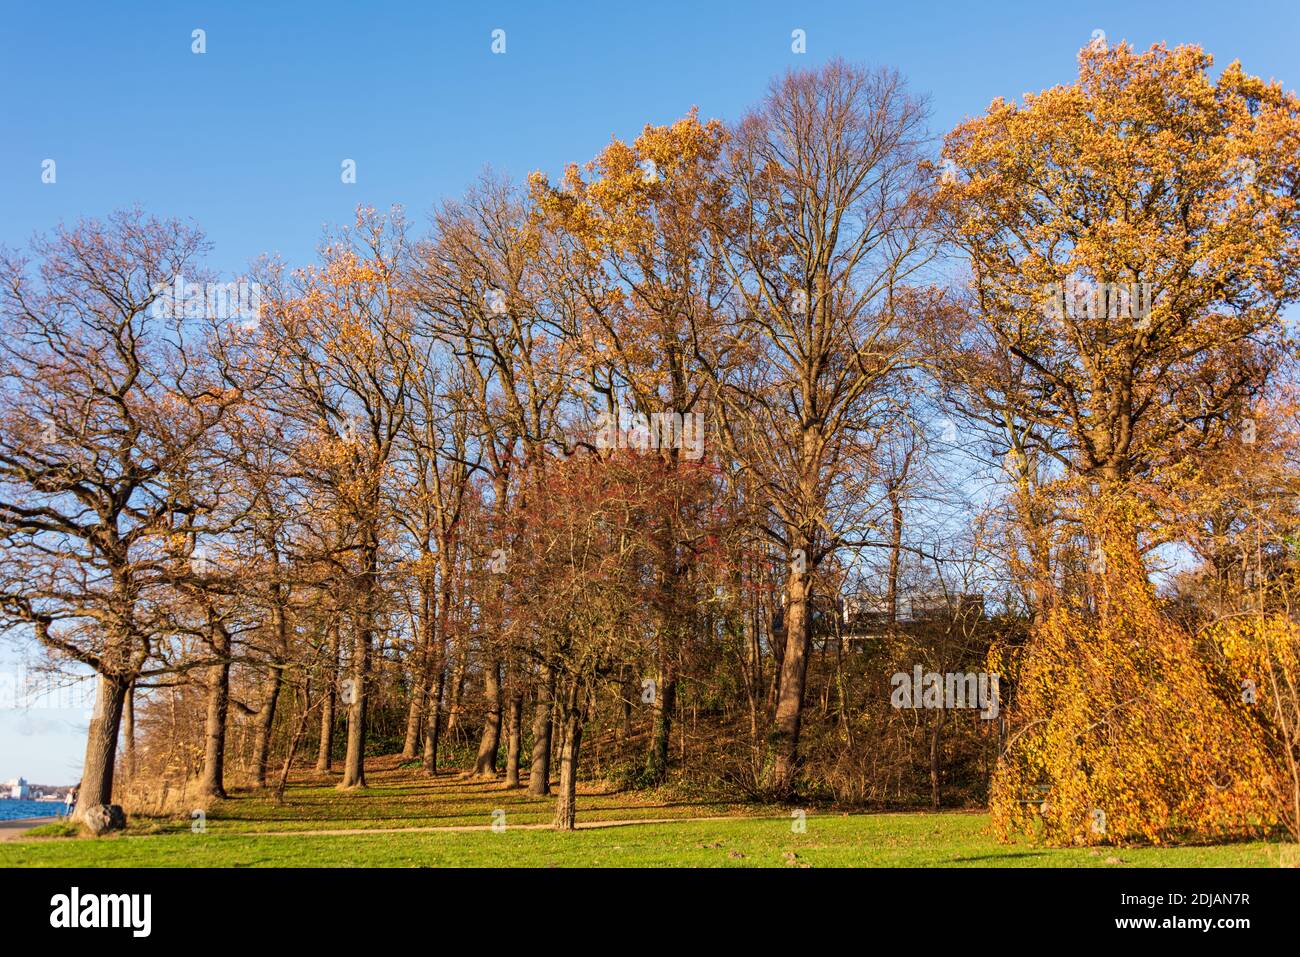 Herbstlicher Baumbestand am Fördewanderweg der Kieler Förde mit herbstlichen Farben Banque D'Images